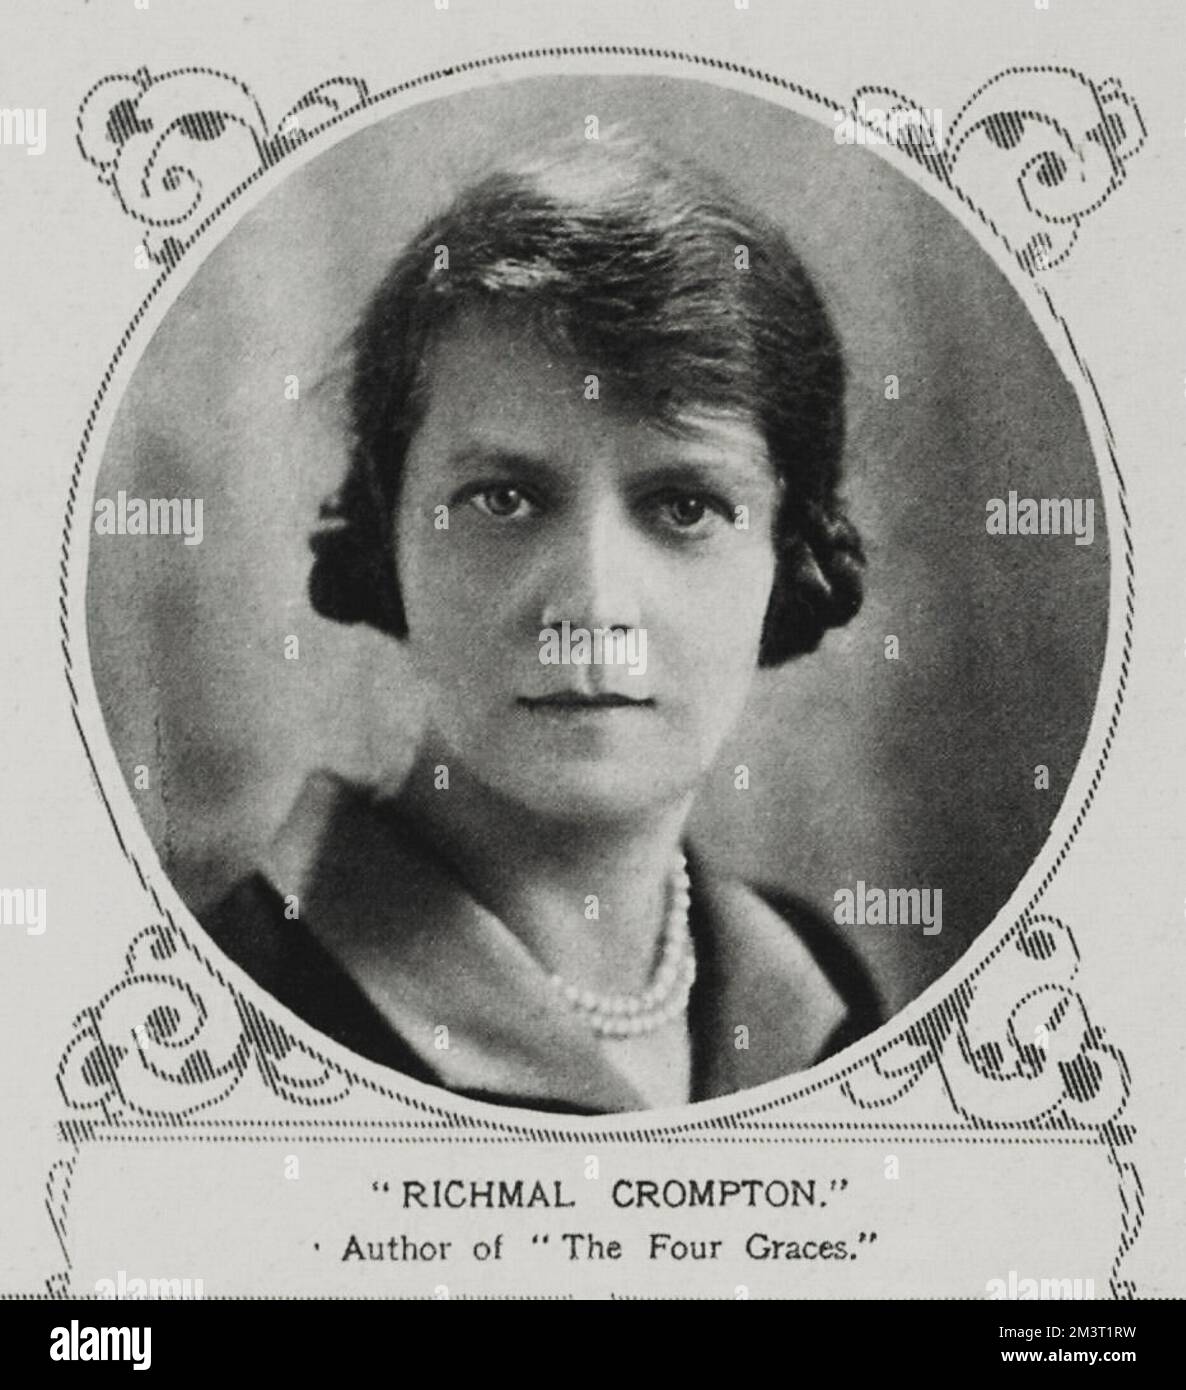 Richmal Crompton (1890 - 1969), scrittore inglese, meglio conosciuto per la sua serie di libri per bambini Just William. Nella foto del Notiziario illustrato di Londra all'epoca del suo libro, fu pubblicato "le quattro grazie". Foto Stock